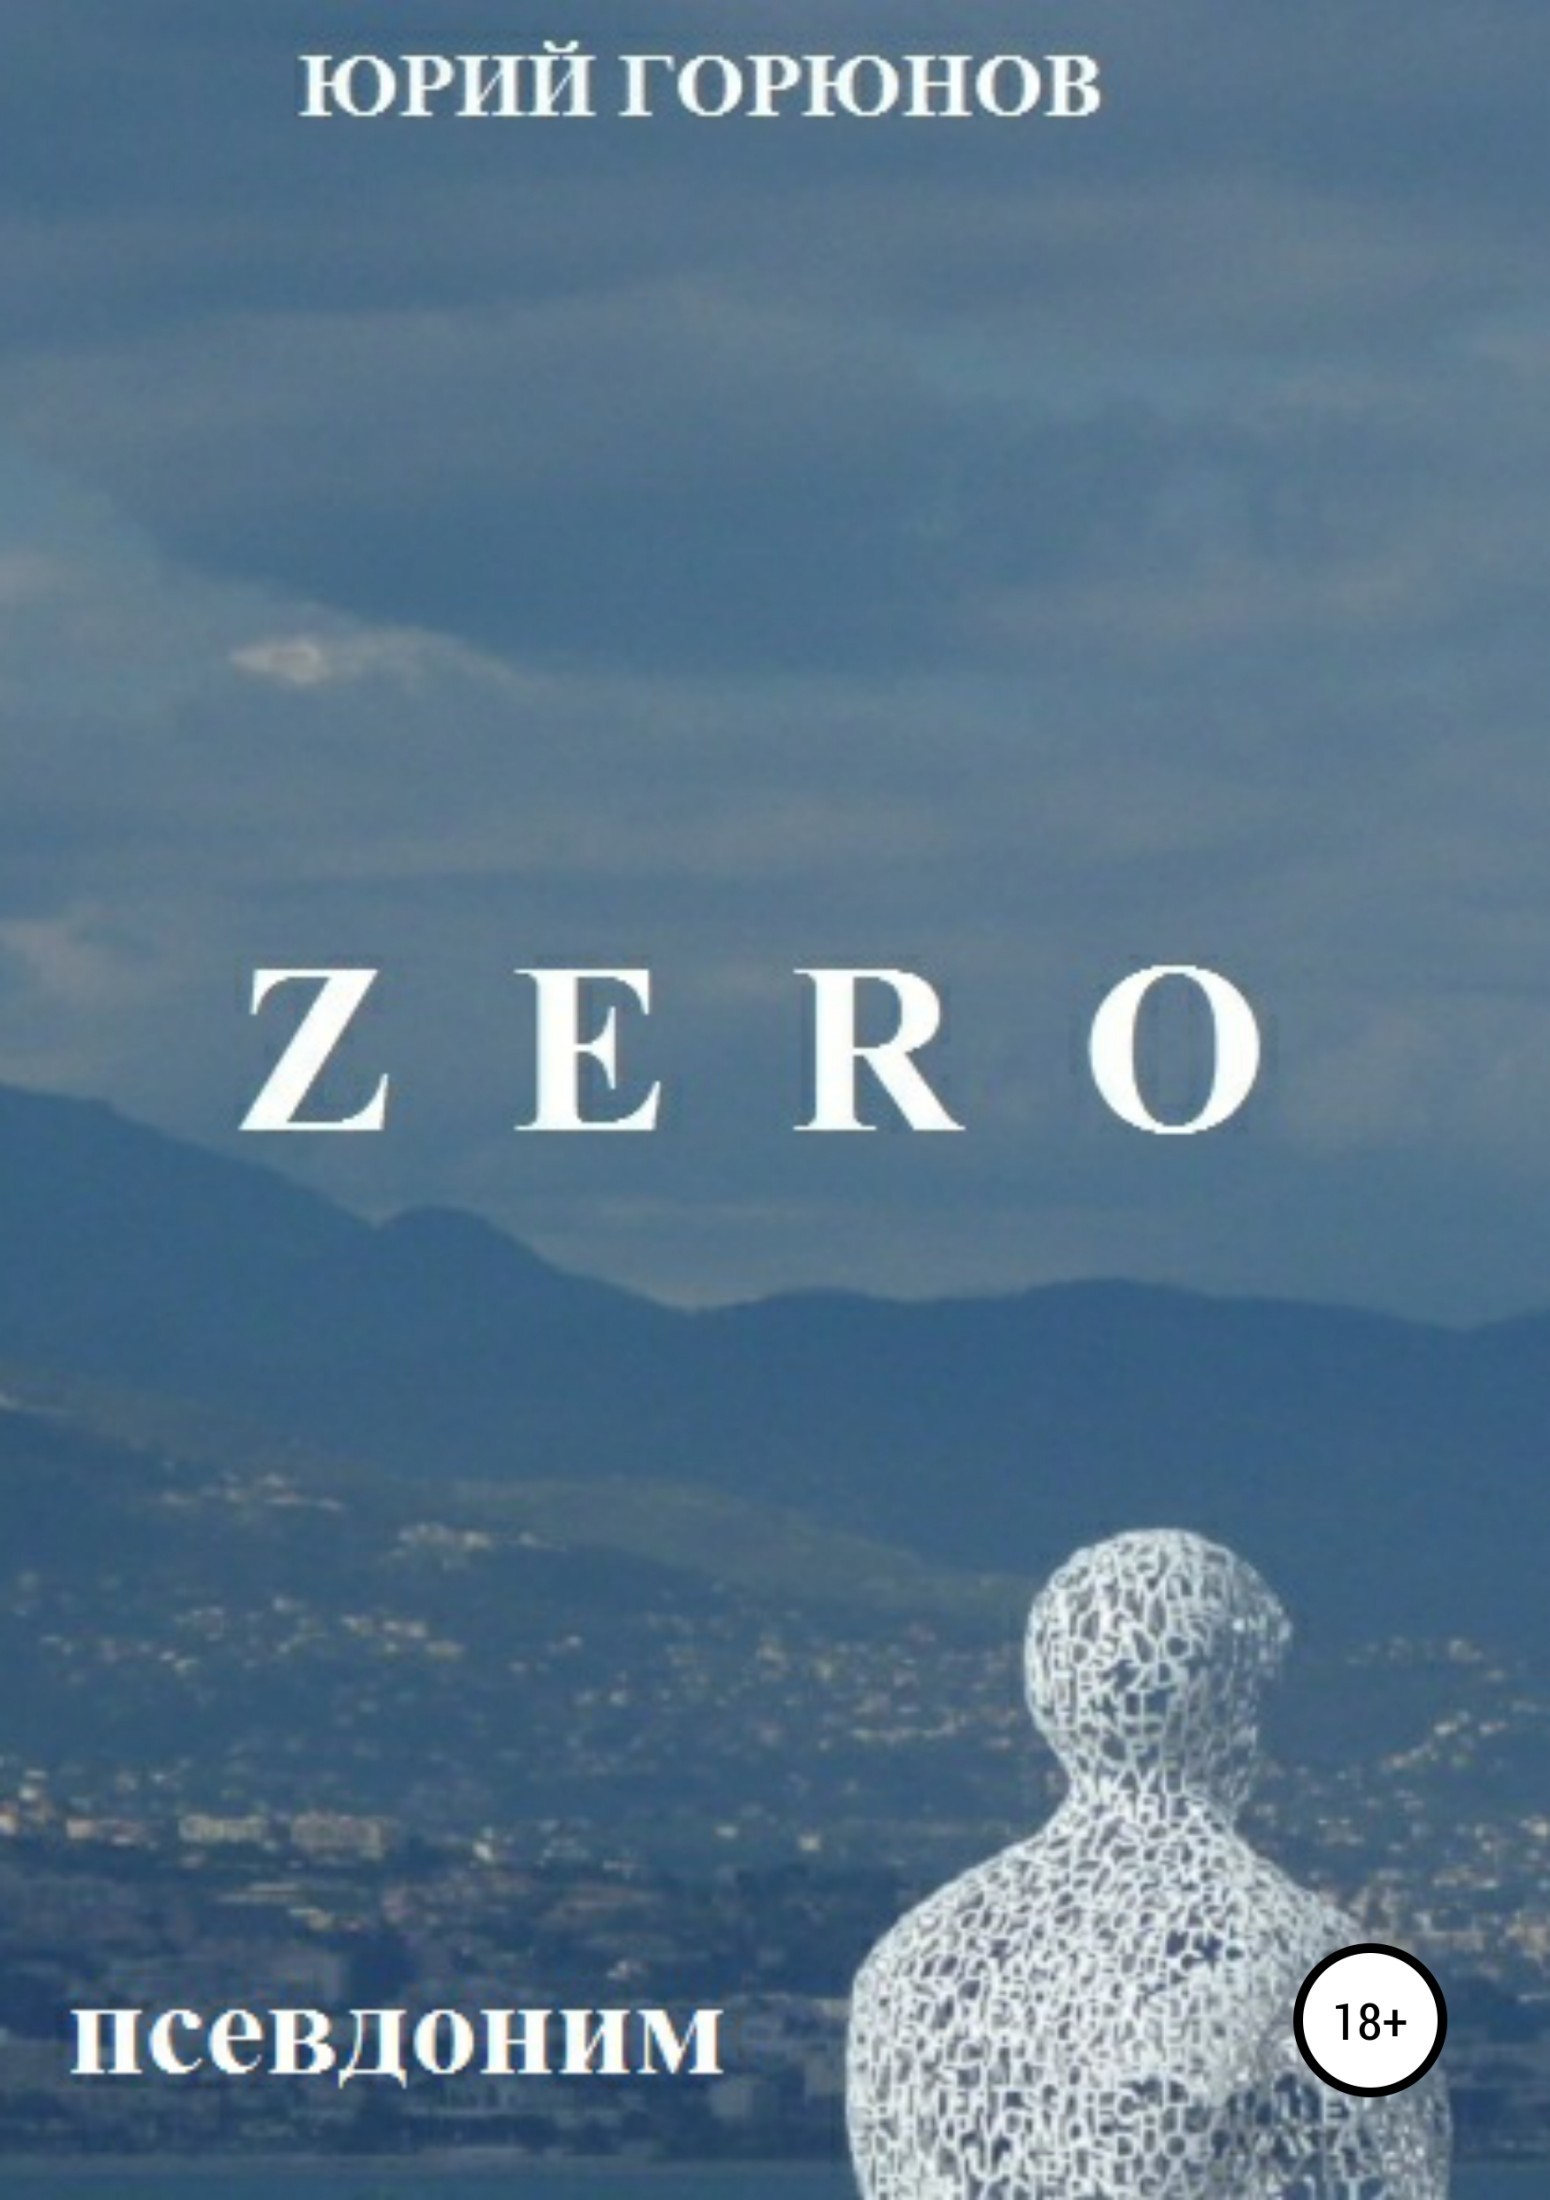 ZERO– псевдоним